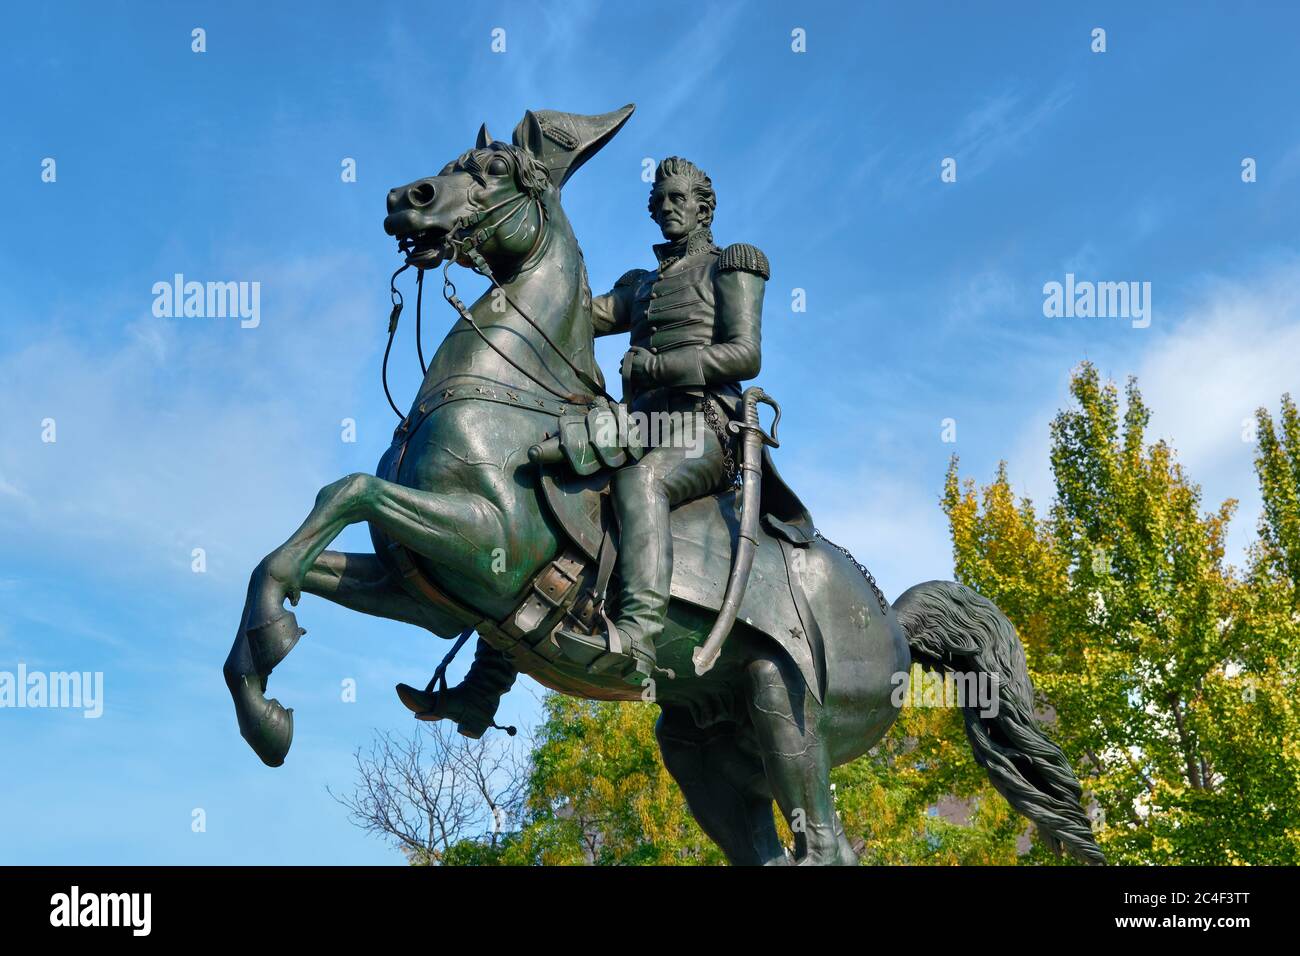 Die Bronzestatue des Reiterstandbildes von Andrew Jackson, die Clark Mills 1852 geschaffen hat, befindet sich am Lafayette Square, Washington, DC, USA Stockfoto